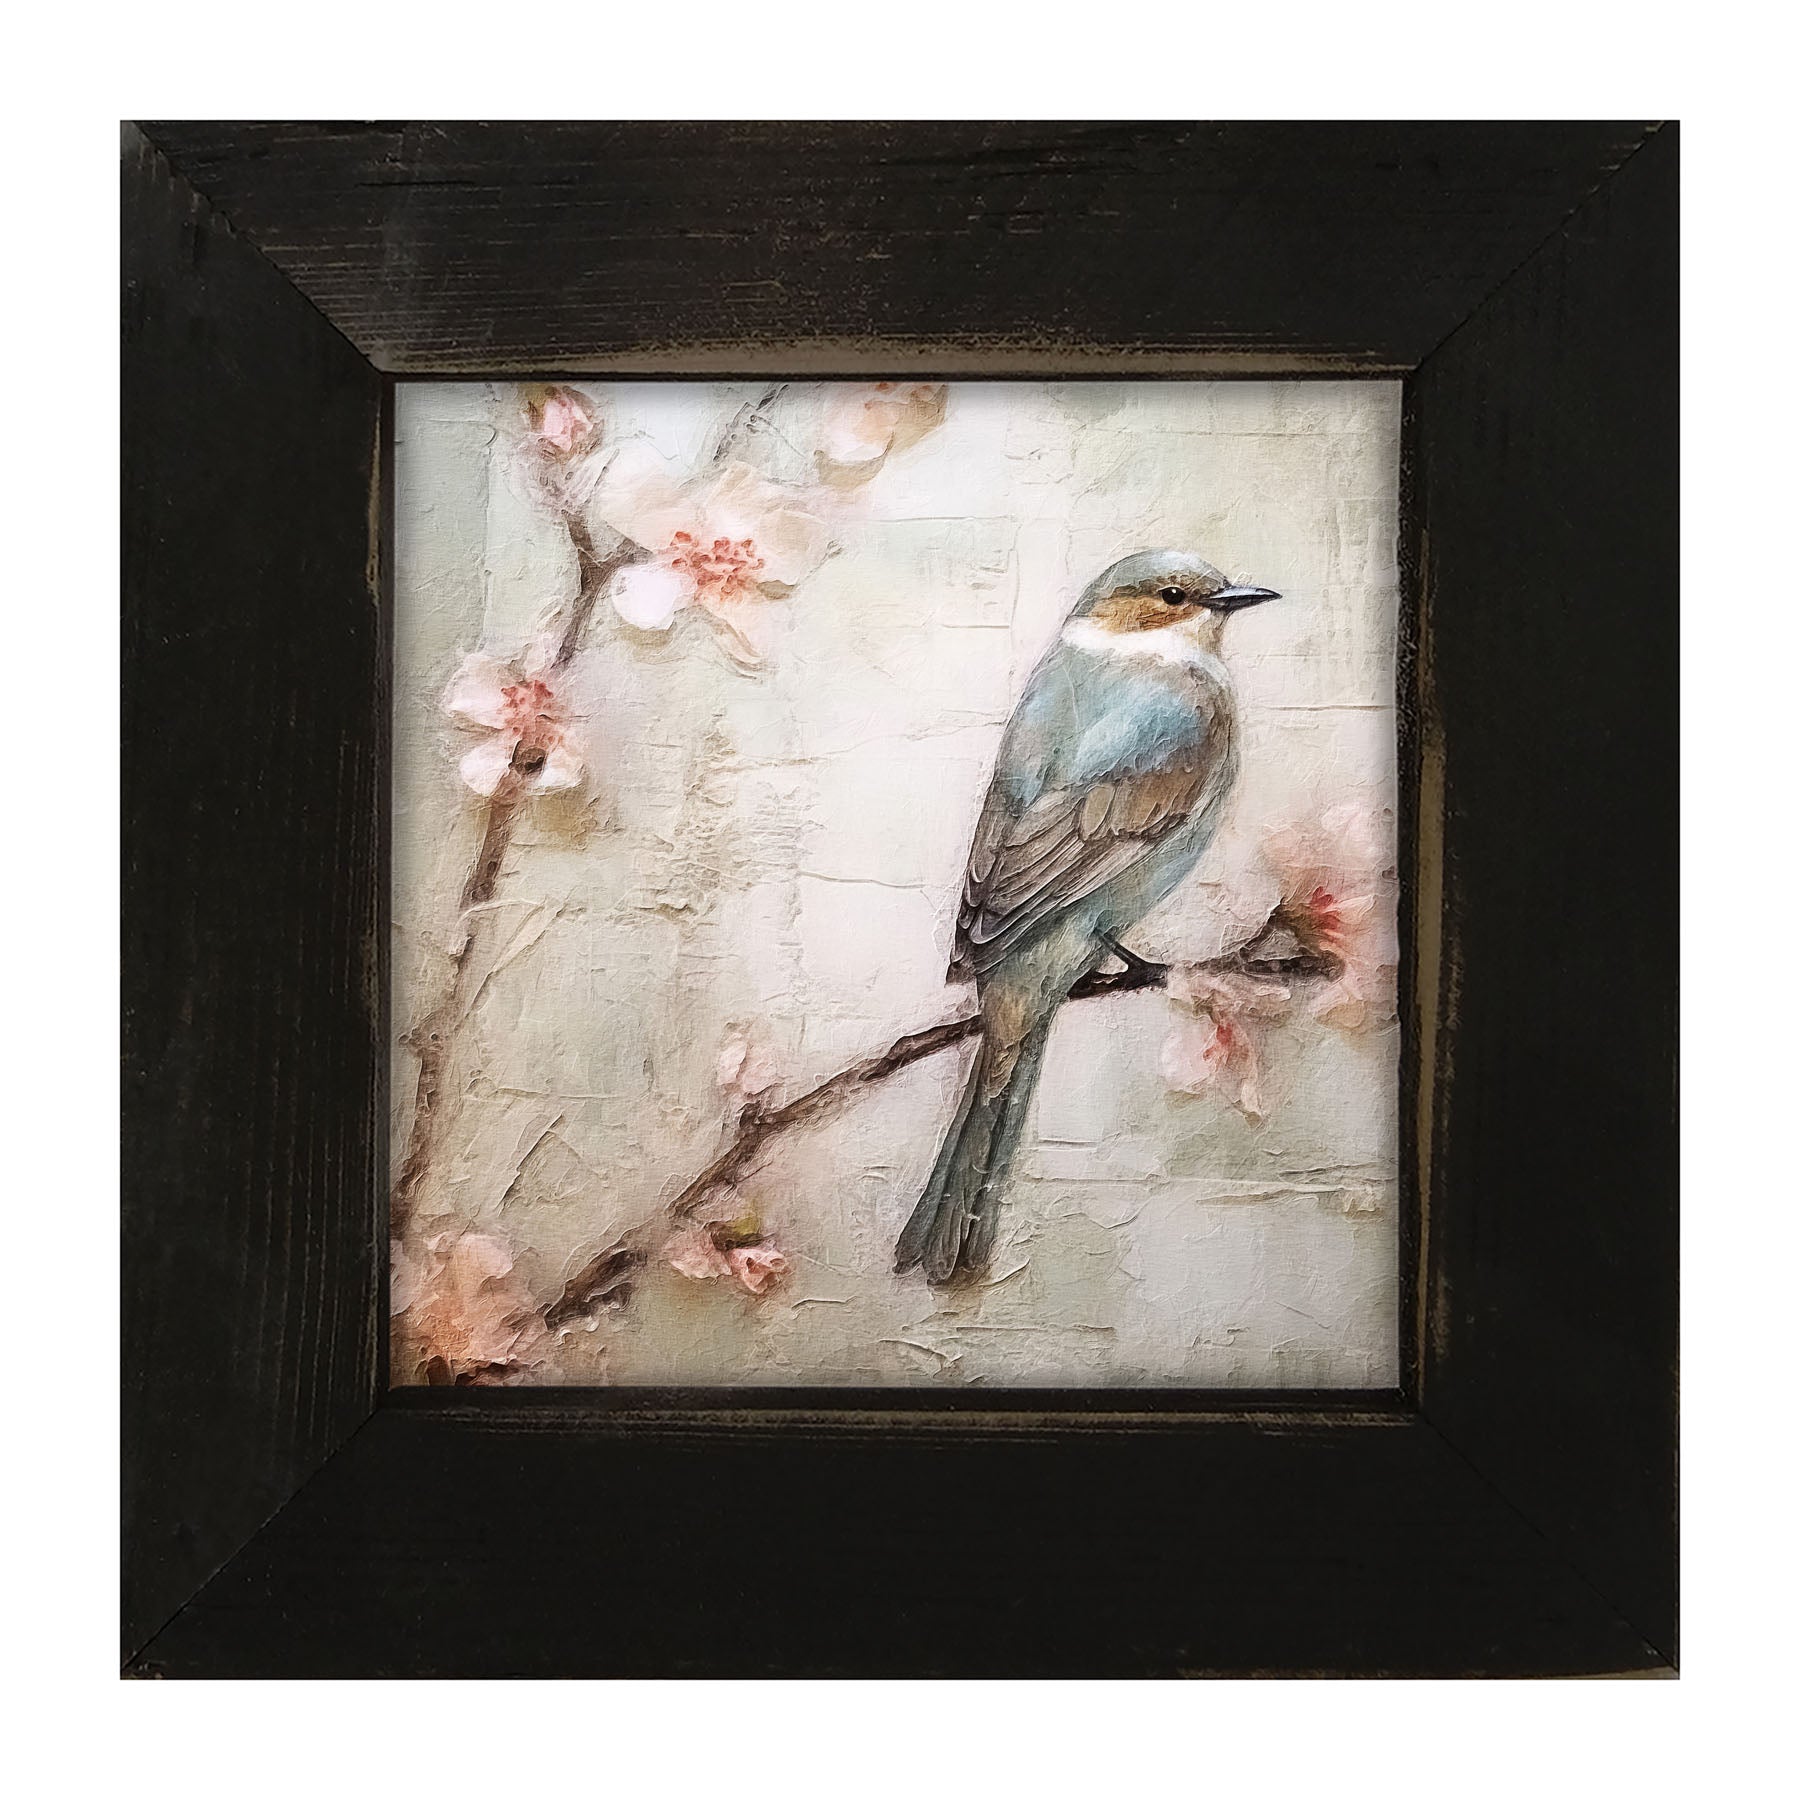 Blue bird on branch - Framed art